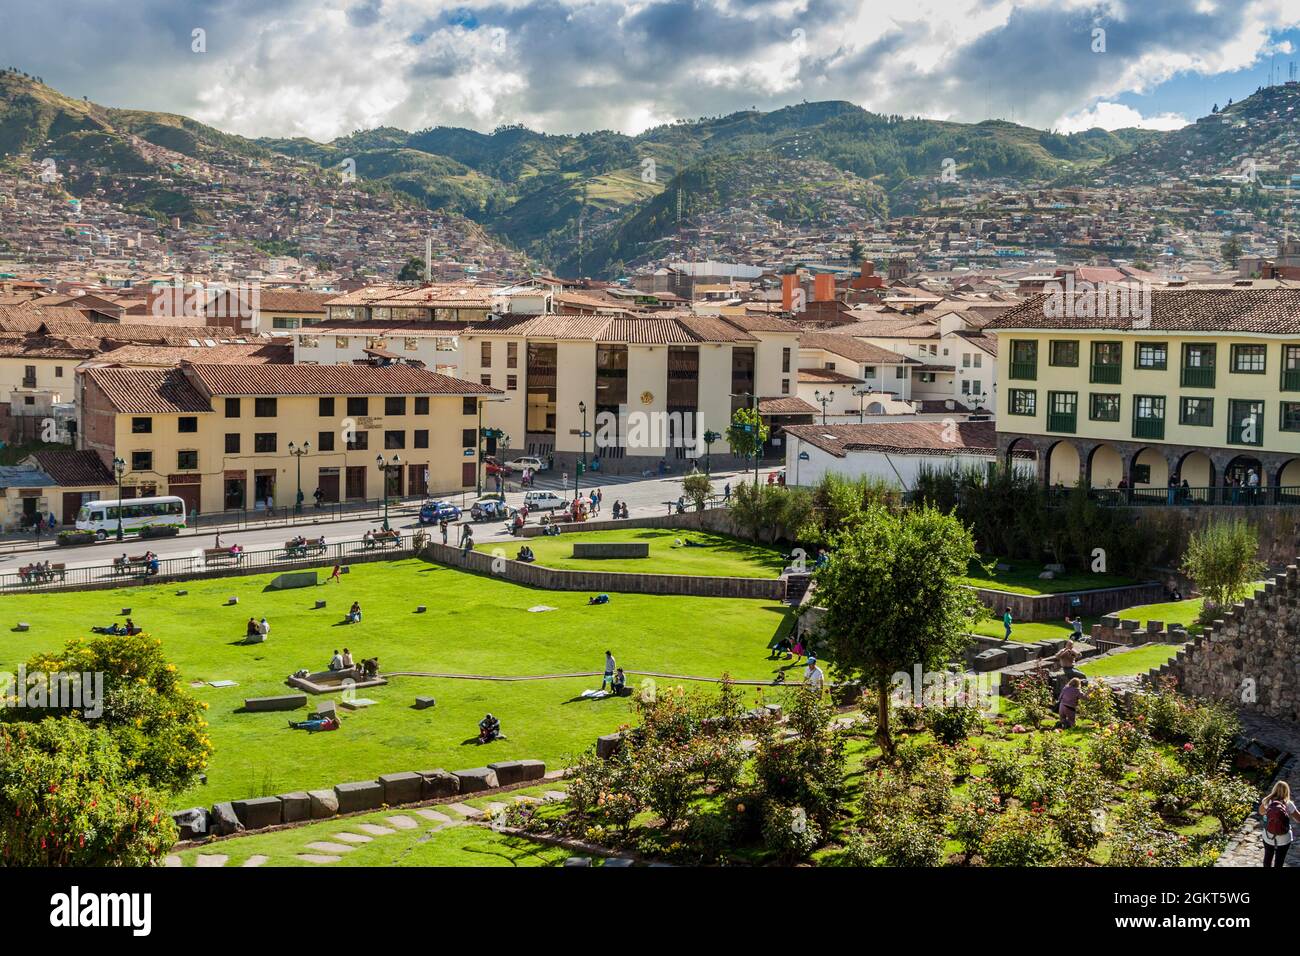 CUZCO, PERU - 23. MAI 2015: Ansicht von Cuzco vom Kloster Santo Domingo in Cuzco, Peru. Stockfoto